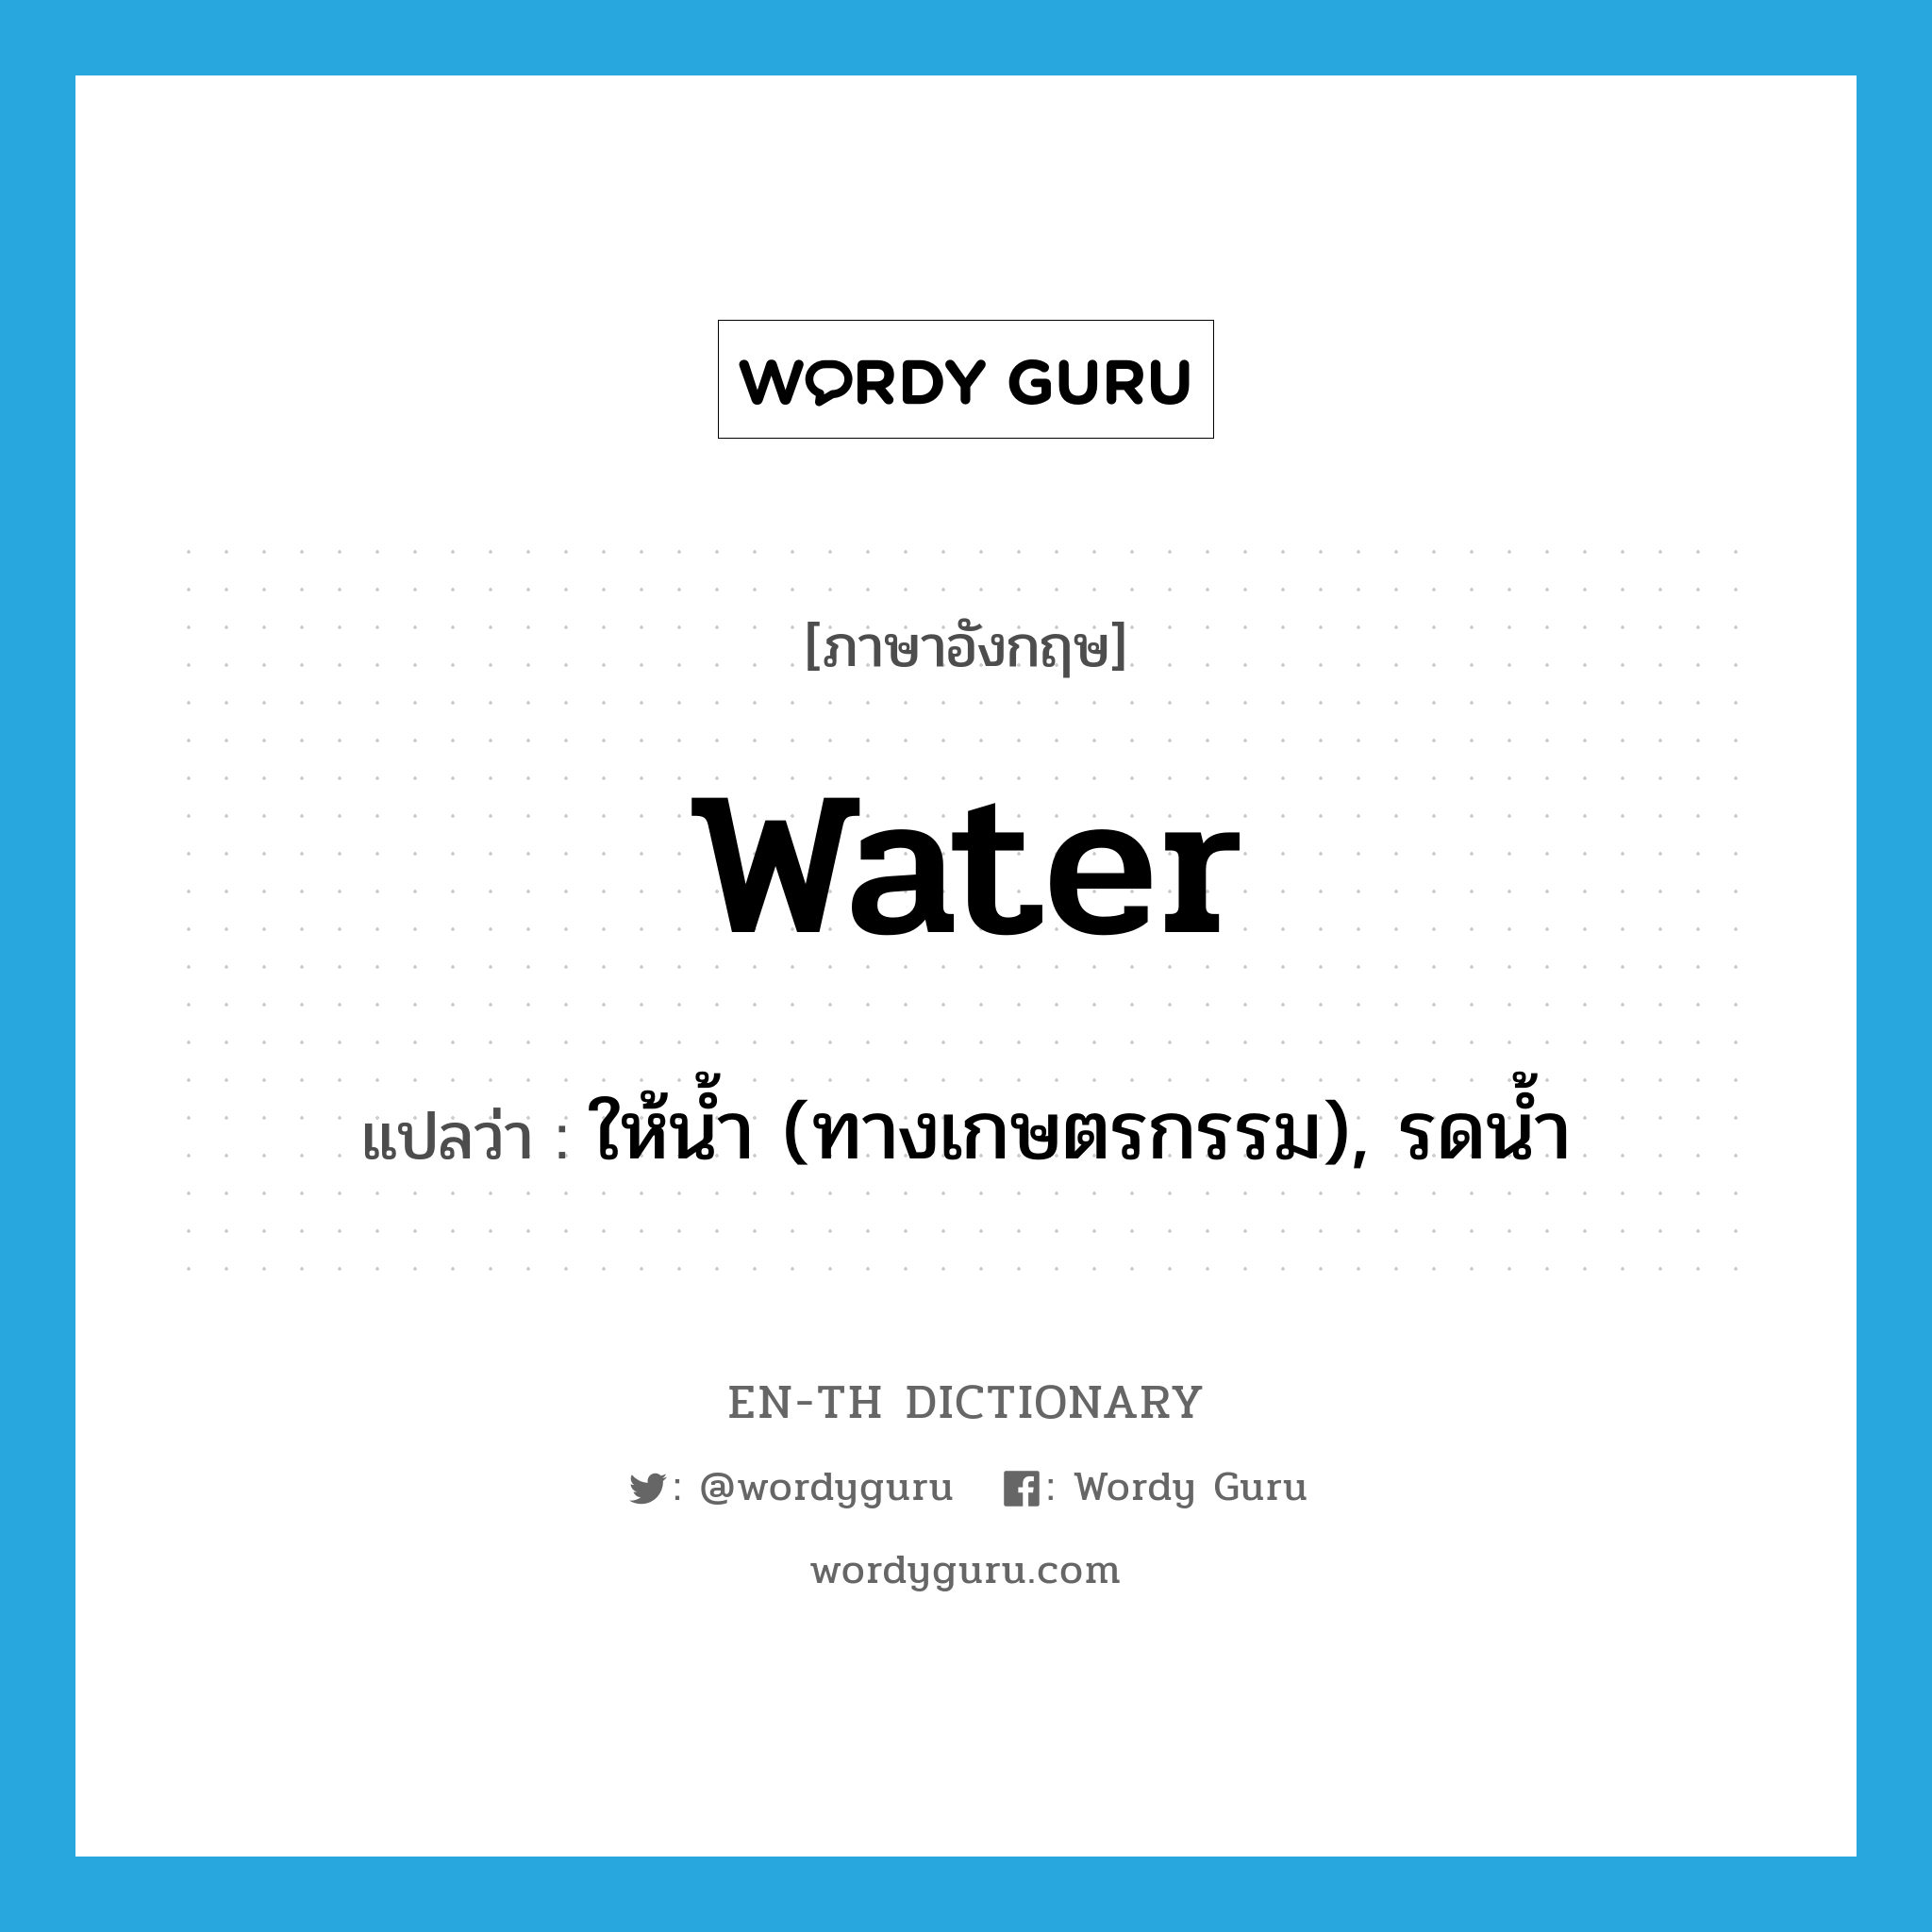 water แปลว่า?, คำศัพท์ภาษาอังกฤษ water แปลว่า ให้น้ำ (ทางเกษตรกรรม), รดน้ำ ประเภท VT หมวด VT